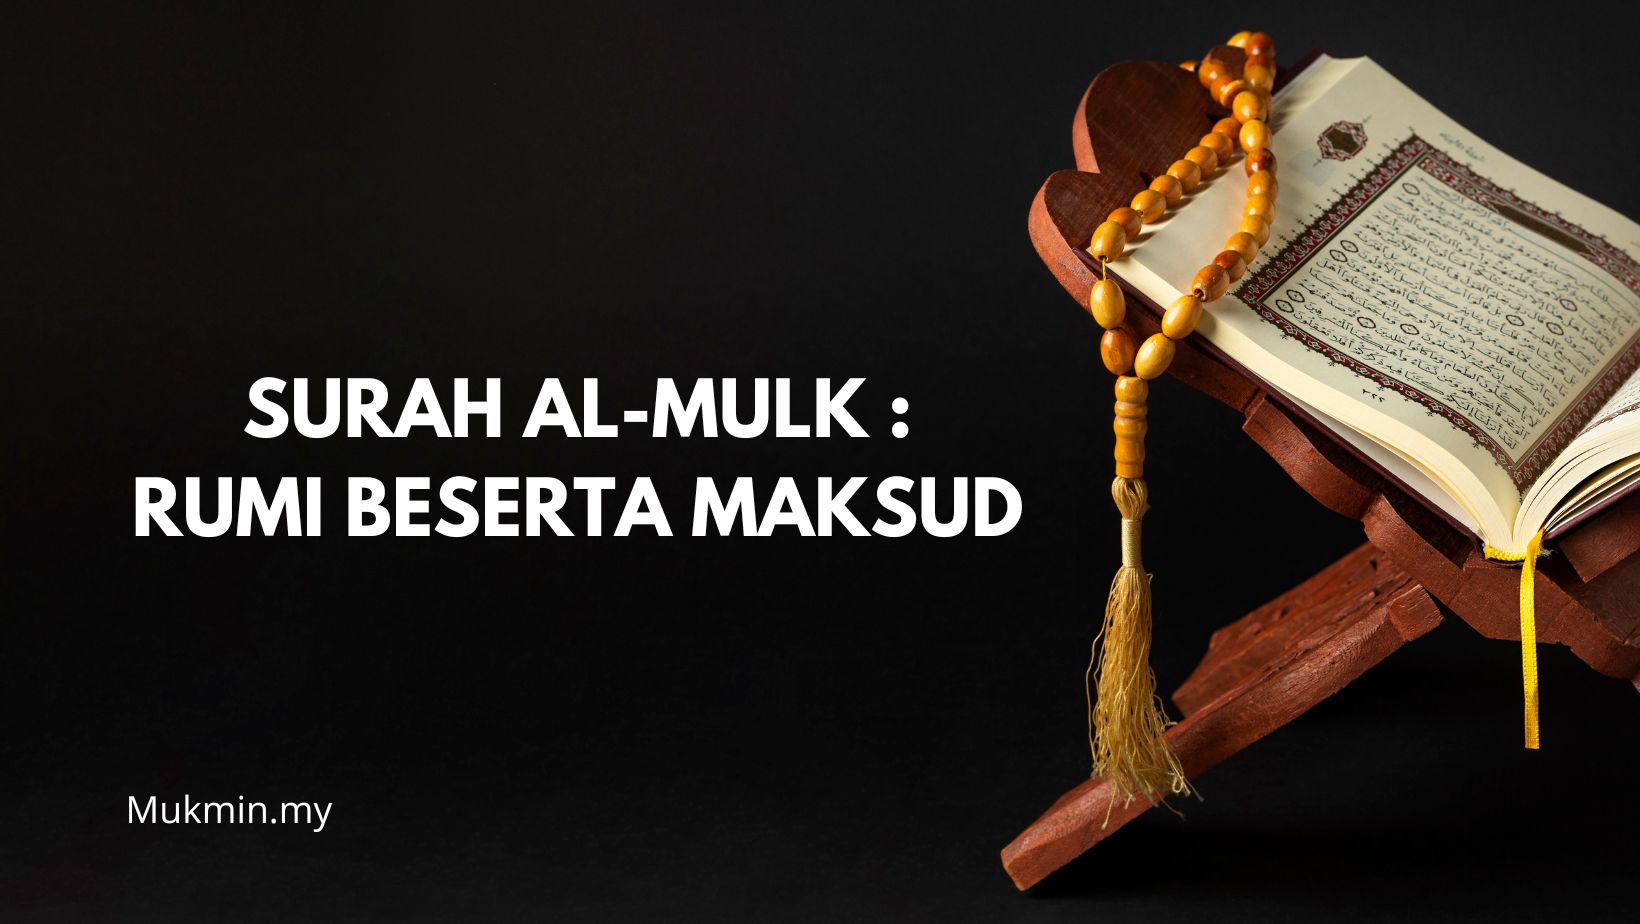 Surah Al-Mulk Rumi Beserta Maksud